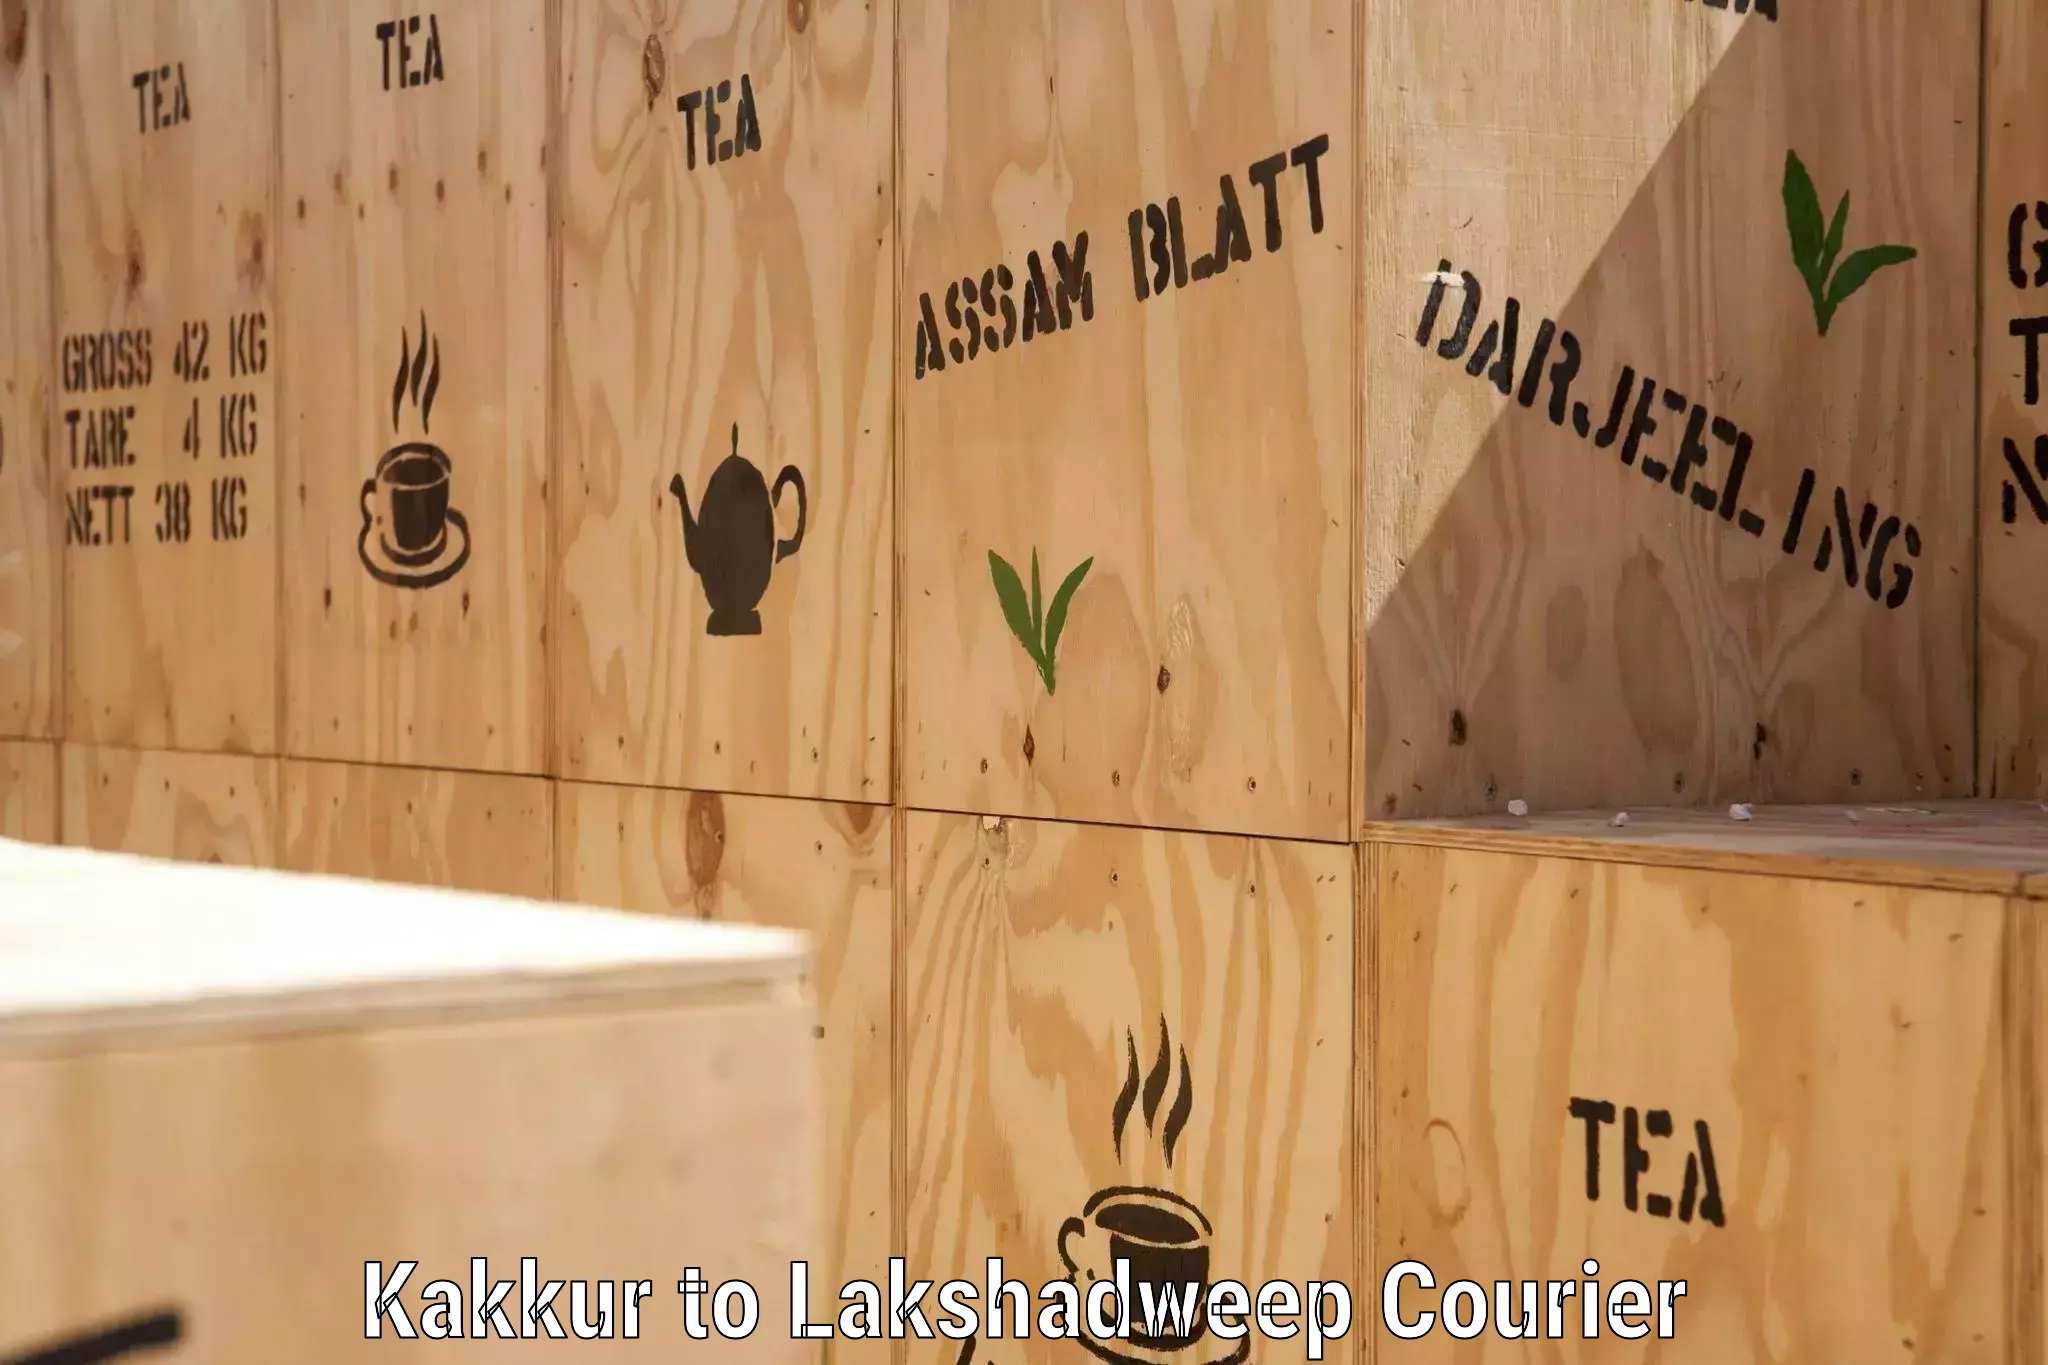 Logistics service provider Kakkur to Lakshadweep